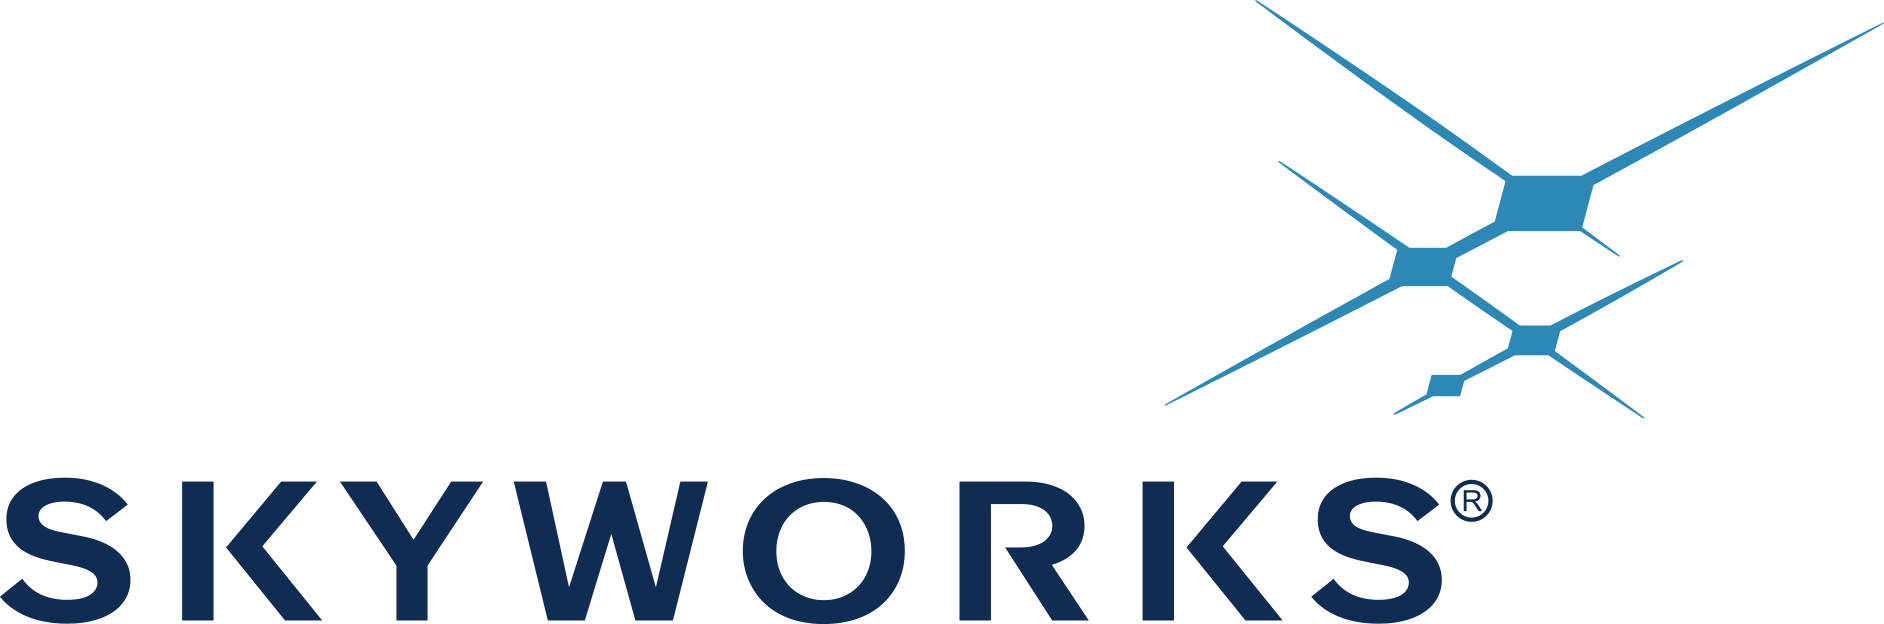 Skyworks Solutions, Inc. Company Logo